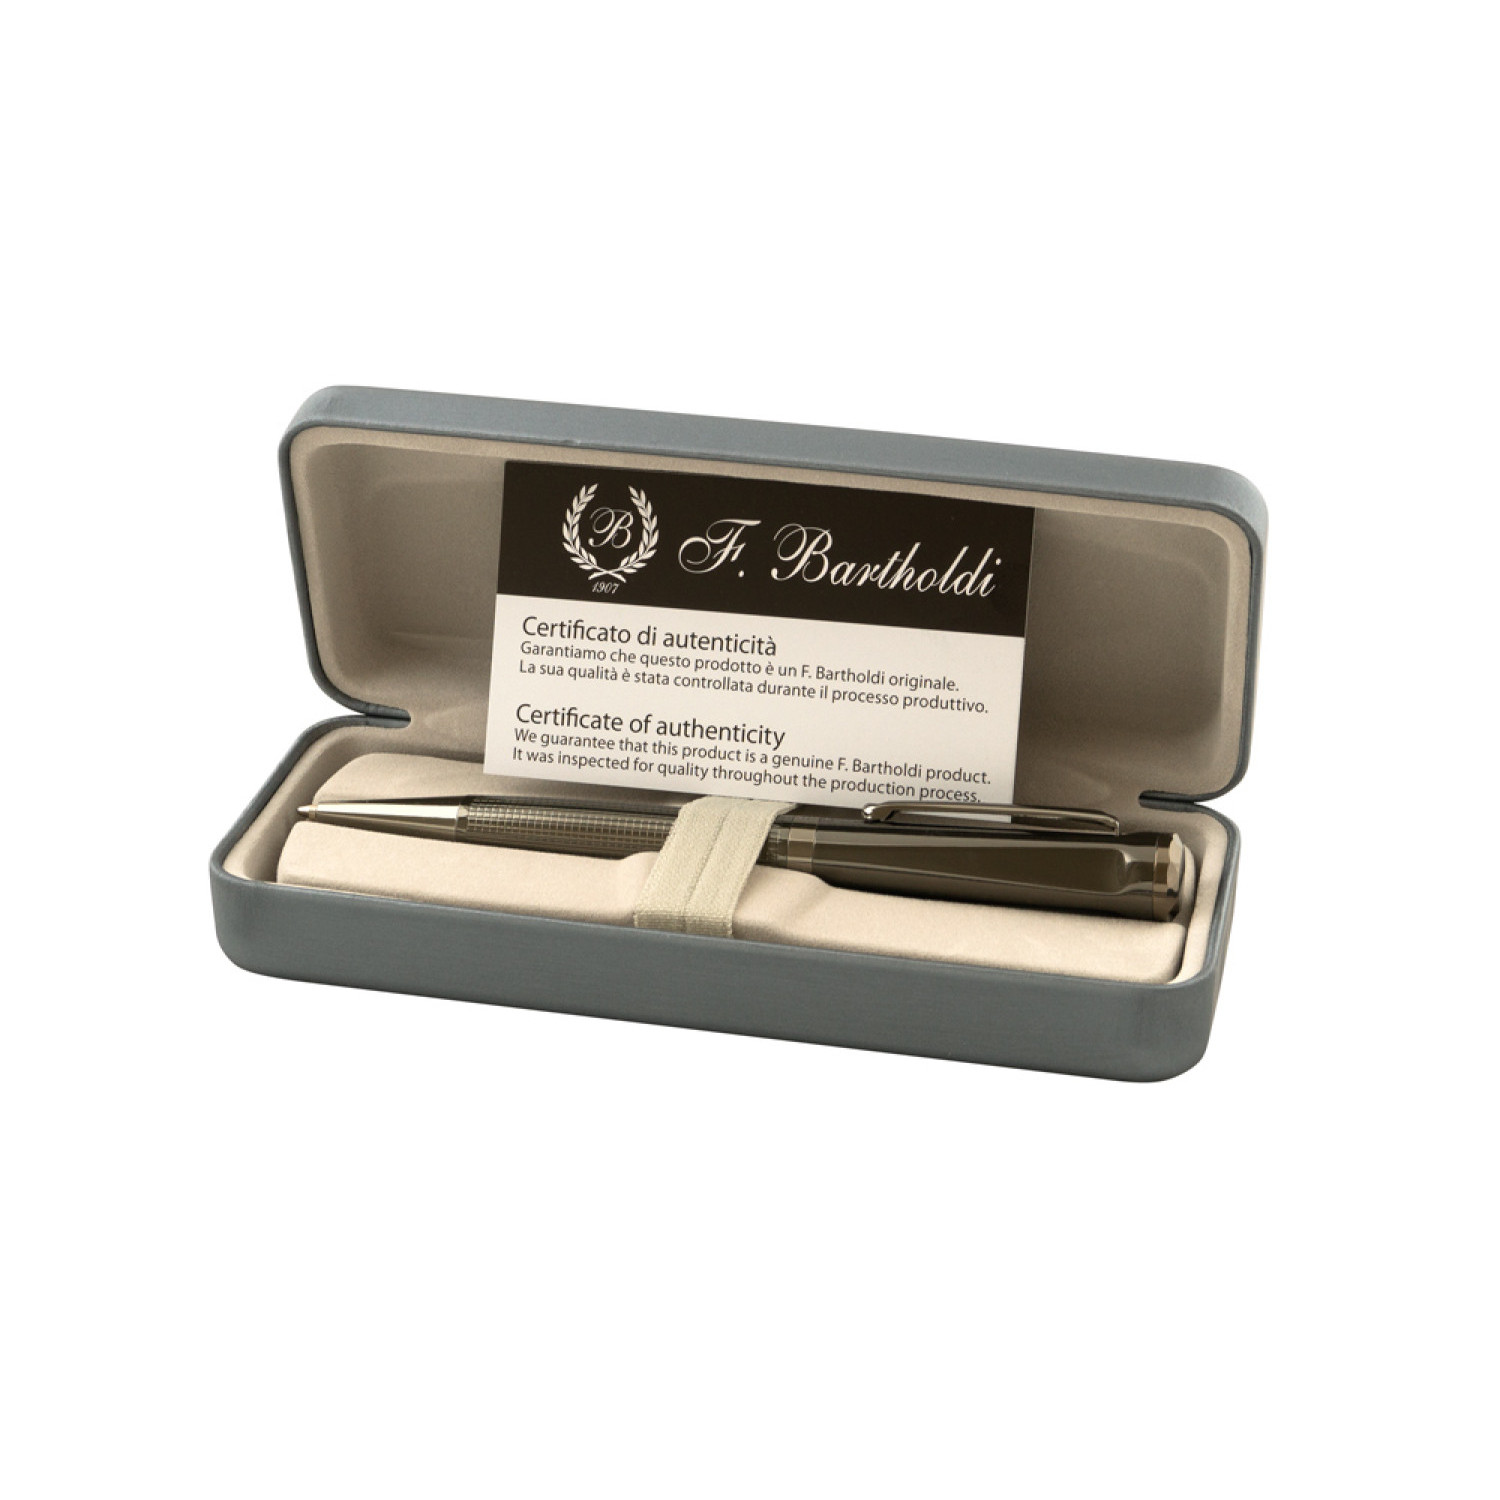 Mетална химикалка Alpina 2138-Box, в кутия, сив